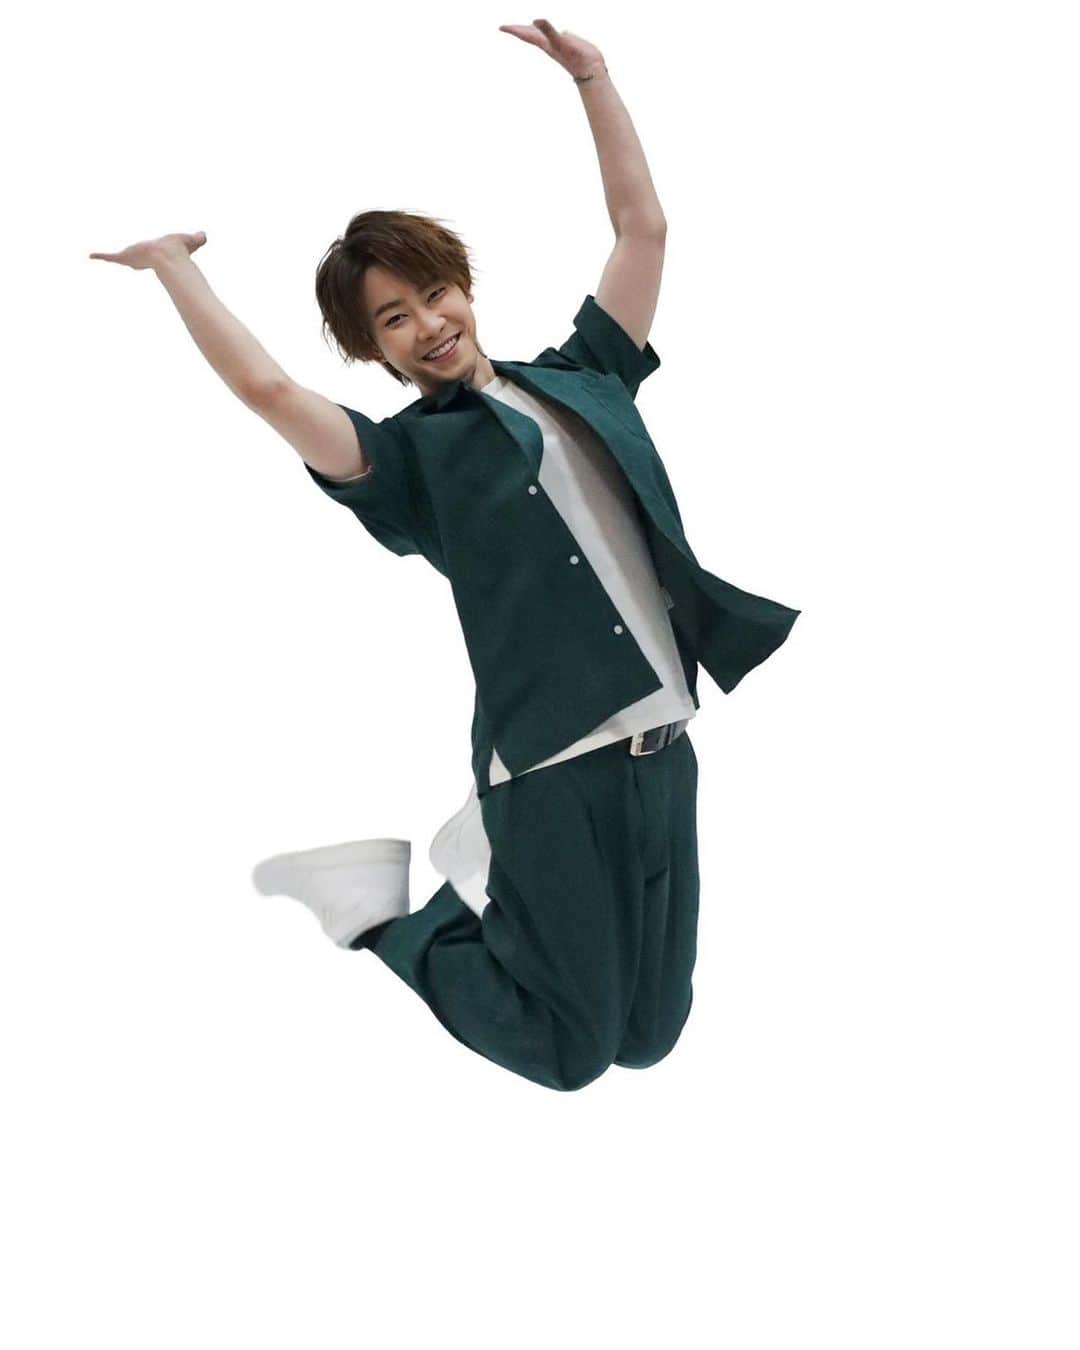 はやぶさのインスタグラム：「切り取った写真ではありません。 マジジャンプです。 『飛べるねぇ』と褒めて頂けた写真です。  【EN】 This is not a cropped photo. This is a real jump. I hope everyone will praise "You can fly”  #はやぶさ #ヒカル #ヤマト #大滝ひかる #駿河ヤマト #イベント #一日一枚  #写真  #hayabusa #hikaru #yamato #event  #picstory  #picstagram #photooftheday  #photogram  #hayabusadiary  #はやぶさの日記  #fotohariini」